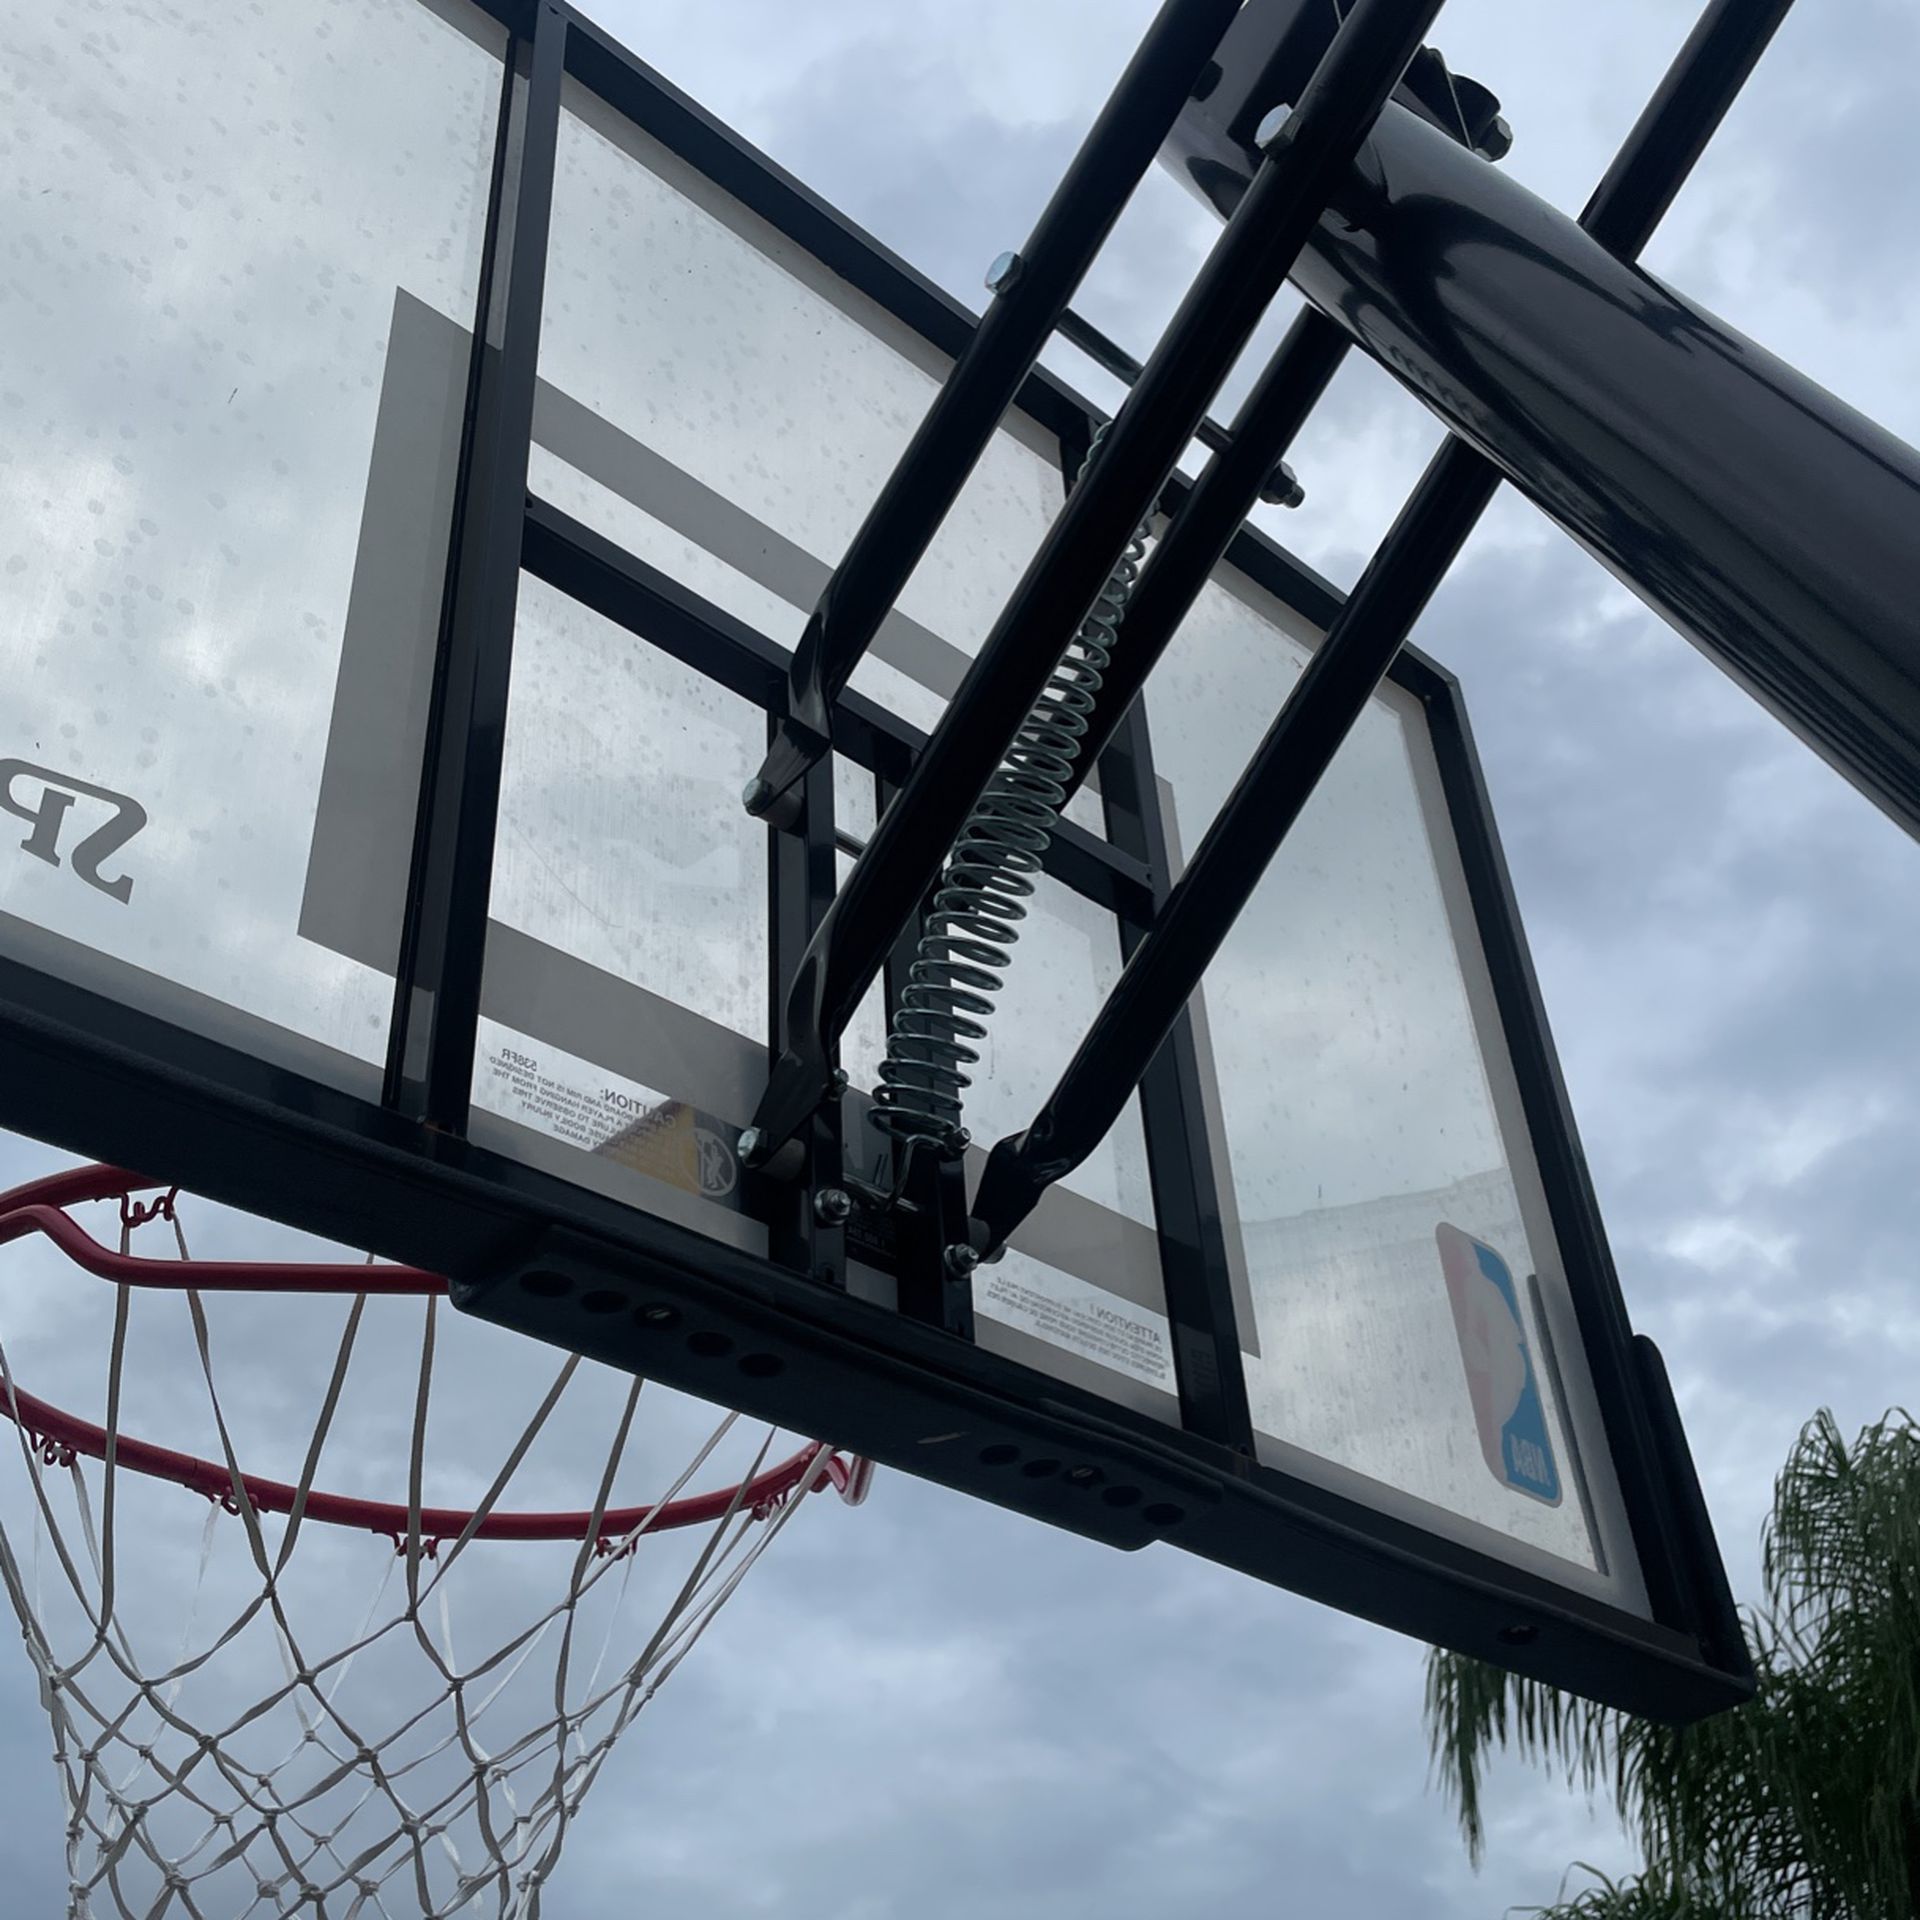 Spalding Mobil Basketball Hoop